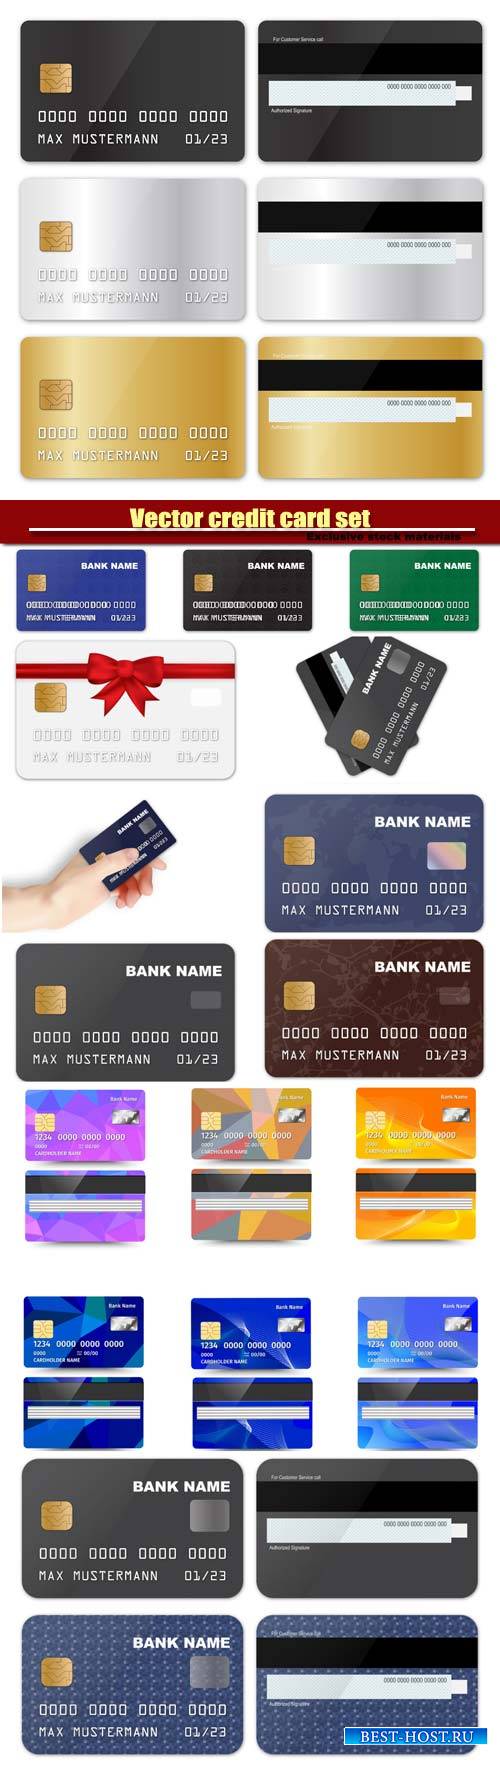 Vector credit card set